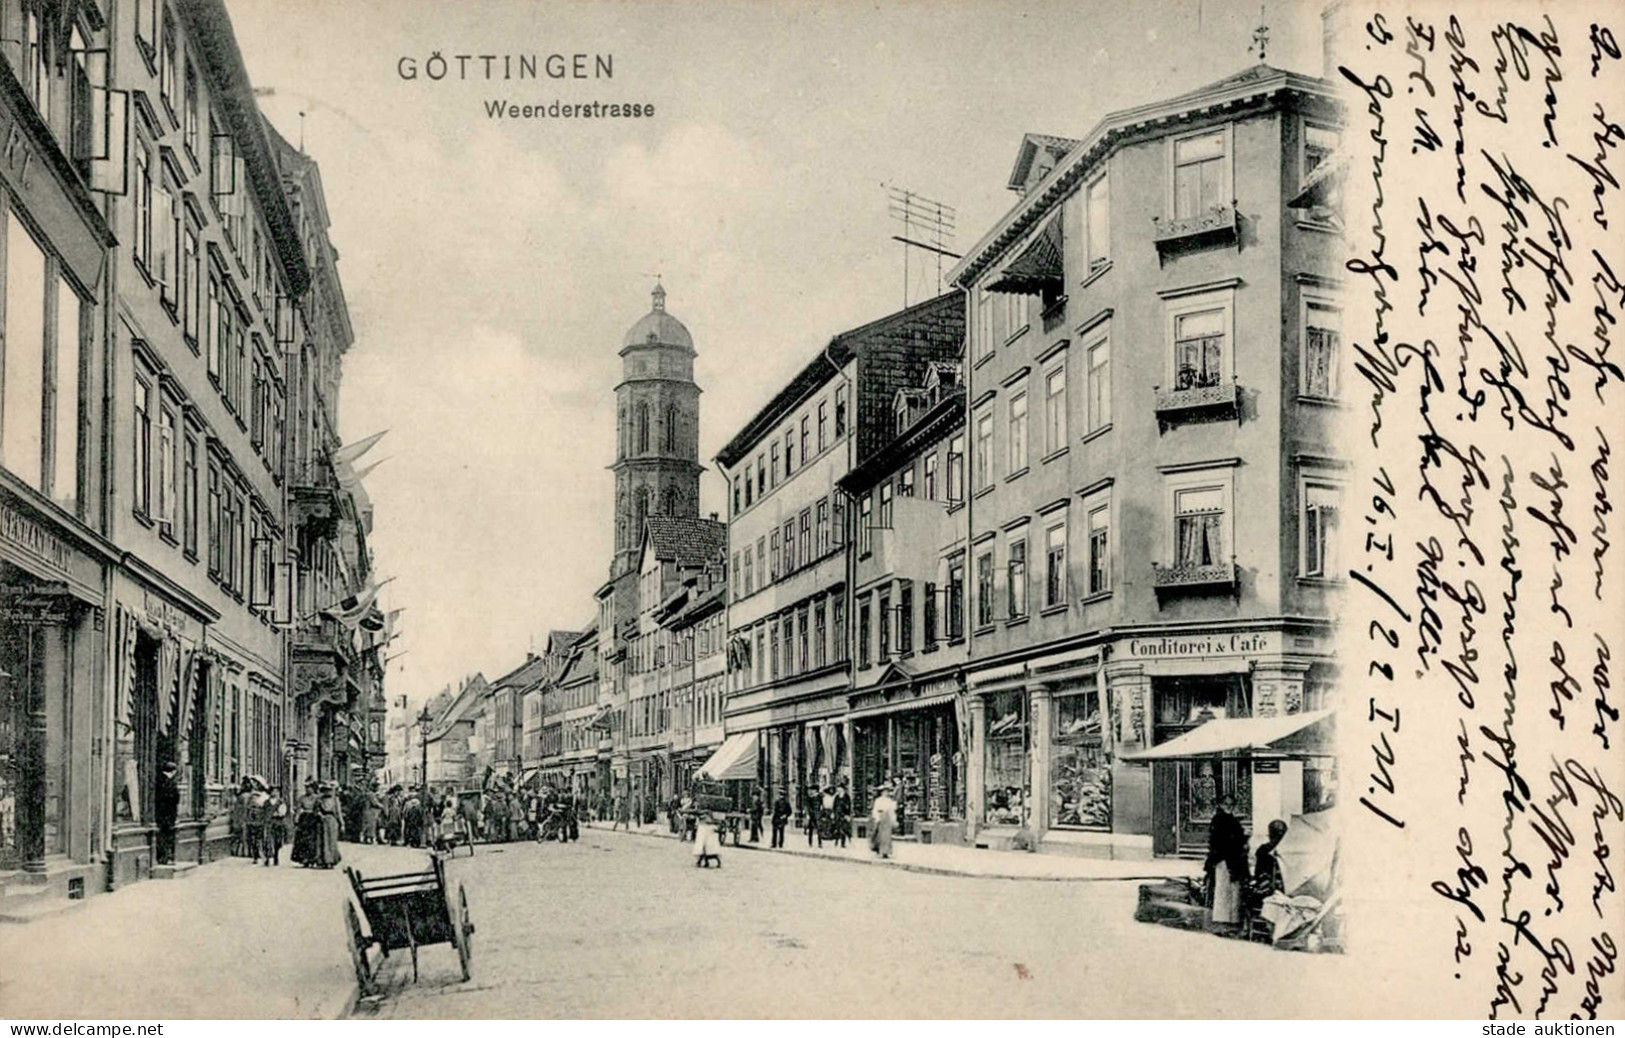 Göttingen (3400) Weenderstrasse Conditorei Cafe Kirche 1911 I-II - Göttingen